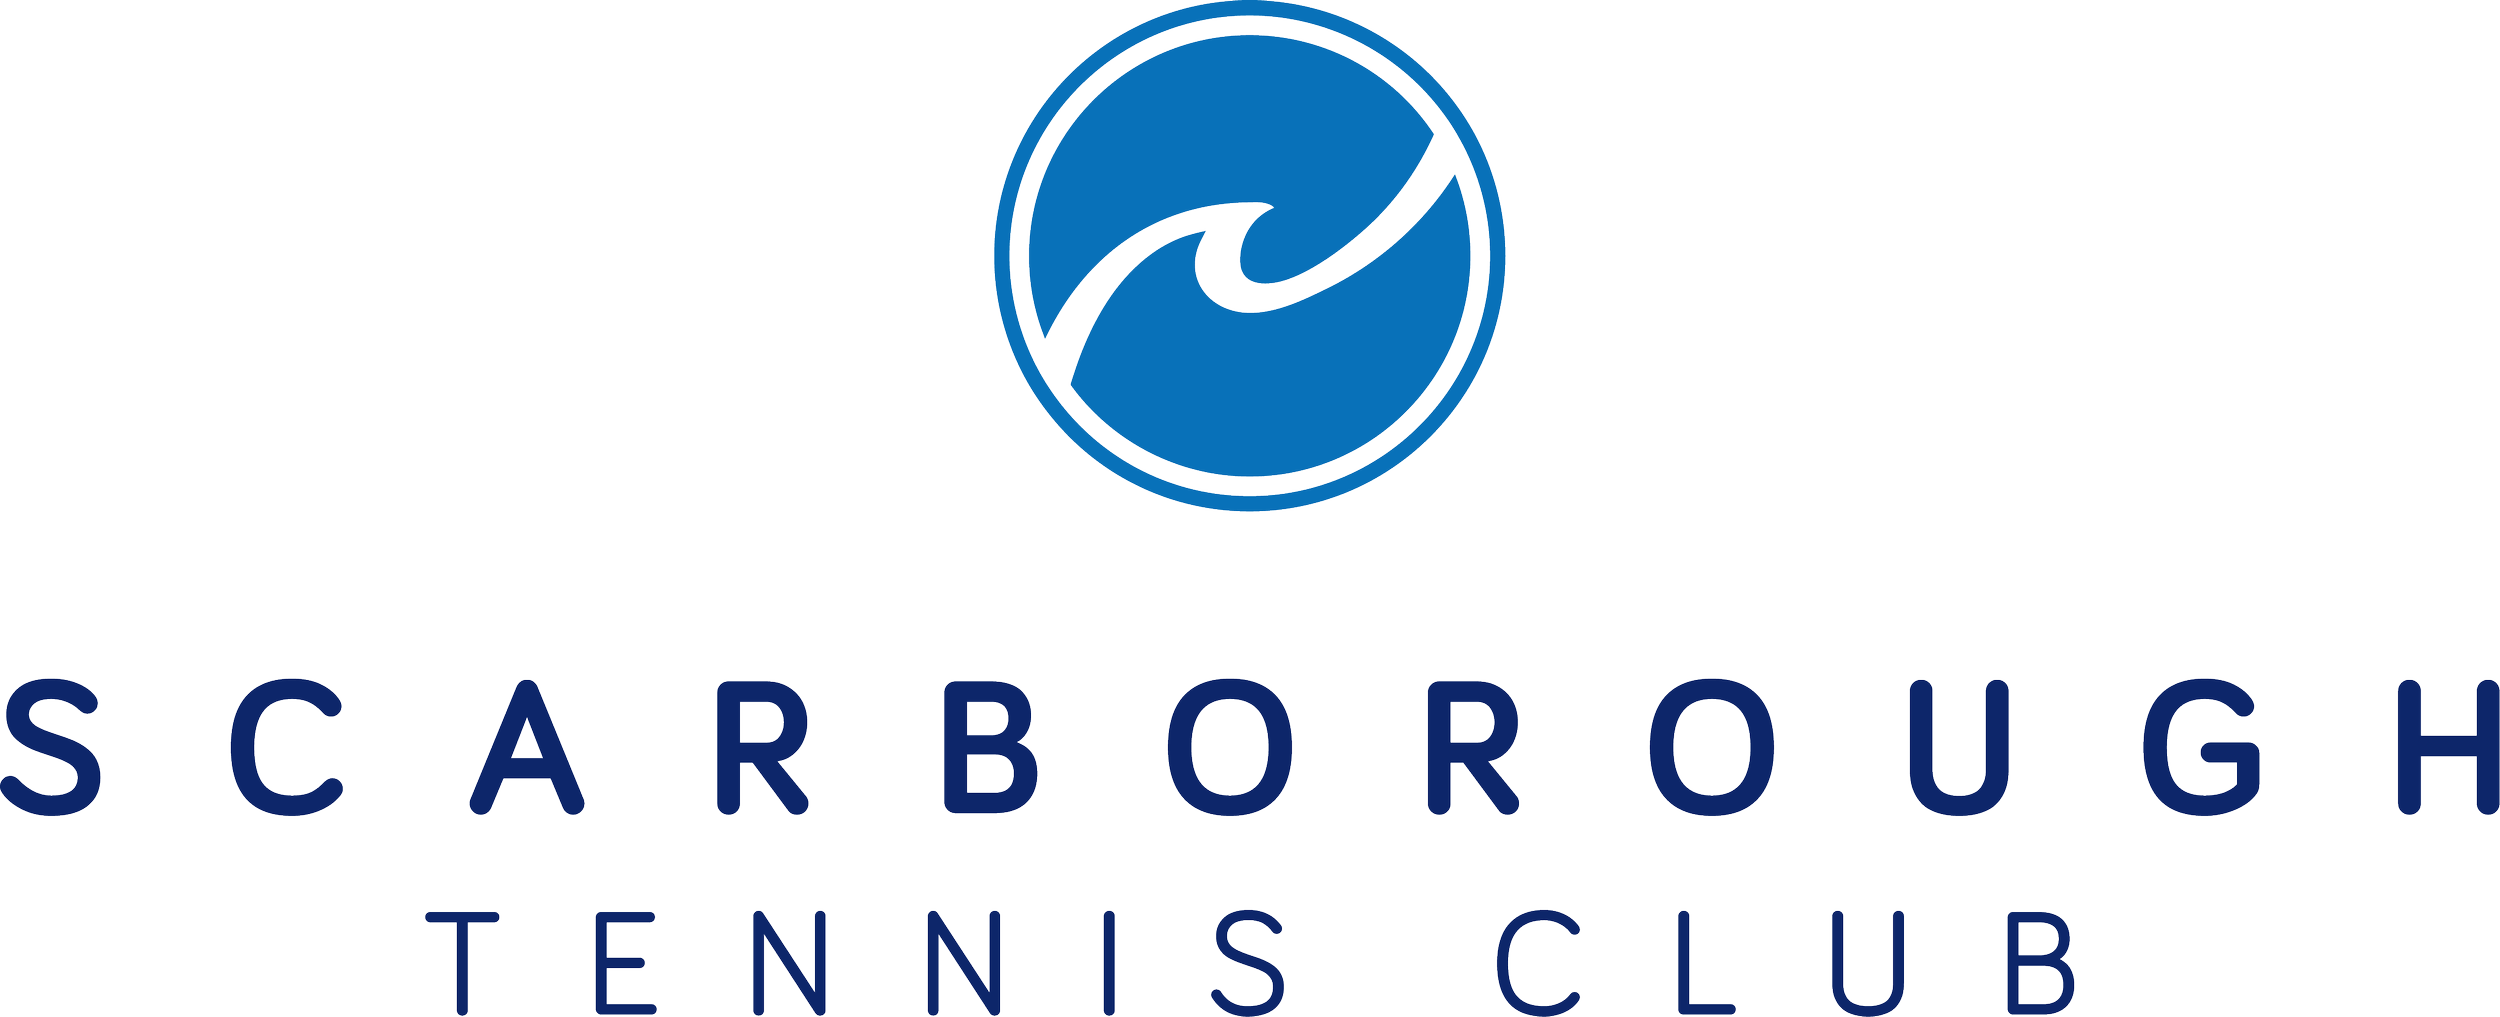 Scarborough Tennis Club